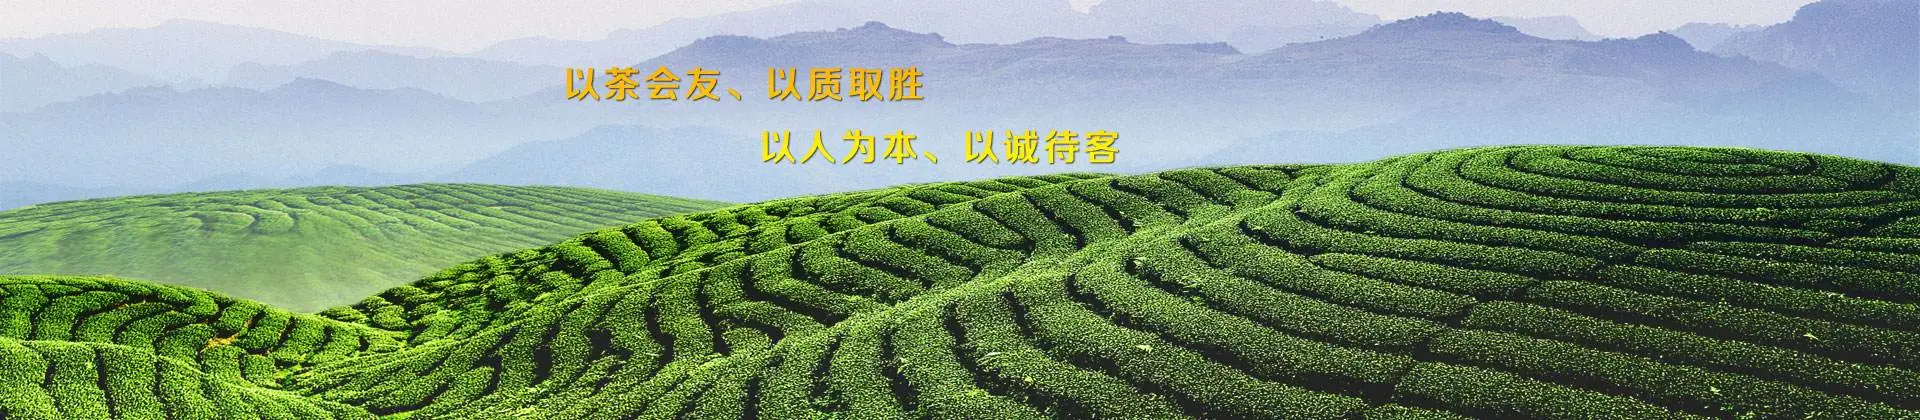 芬吉茶业加盟